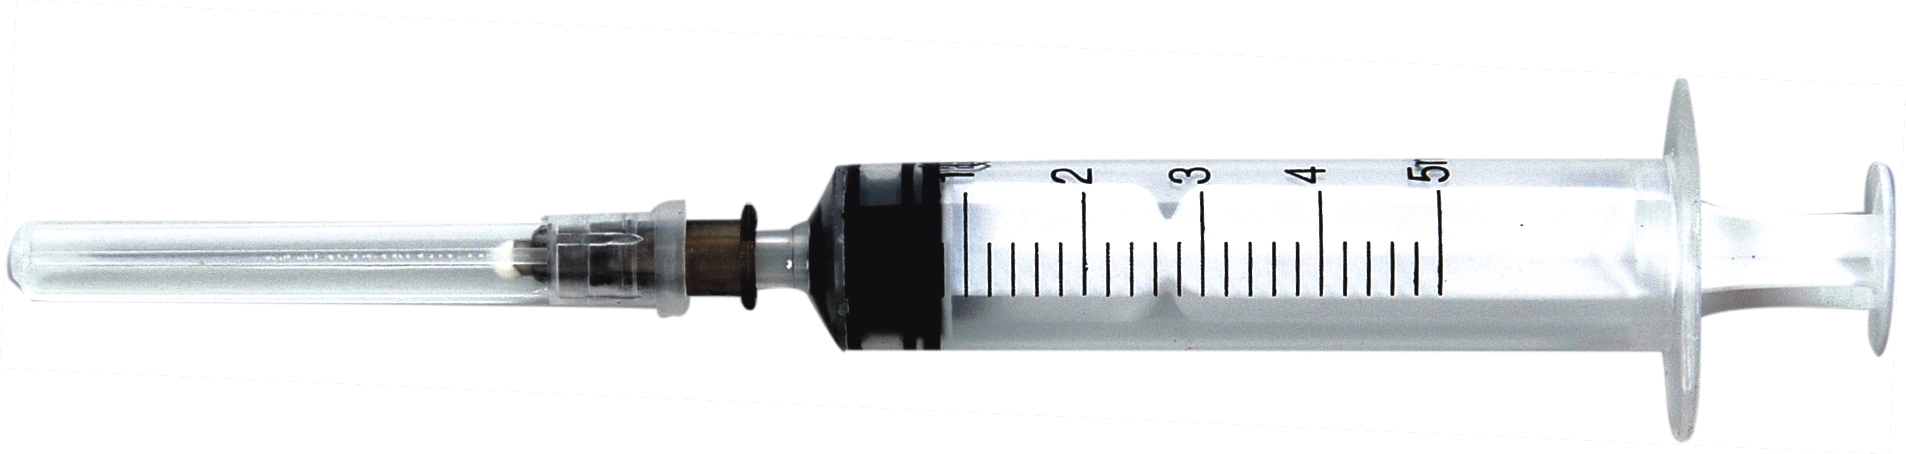 Single Use Syringe with Needle/Disposable Needle